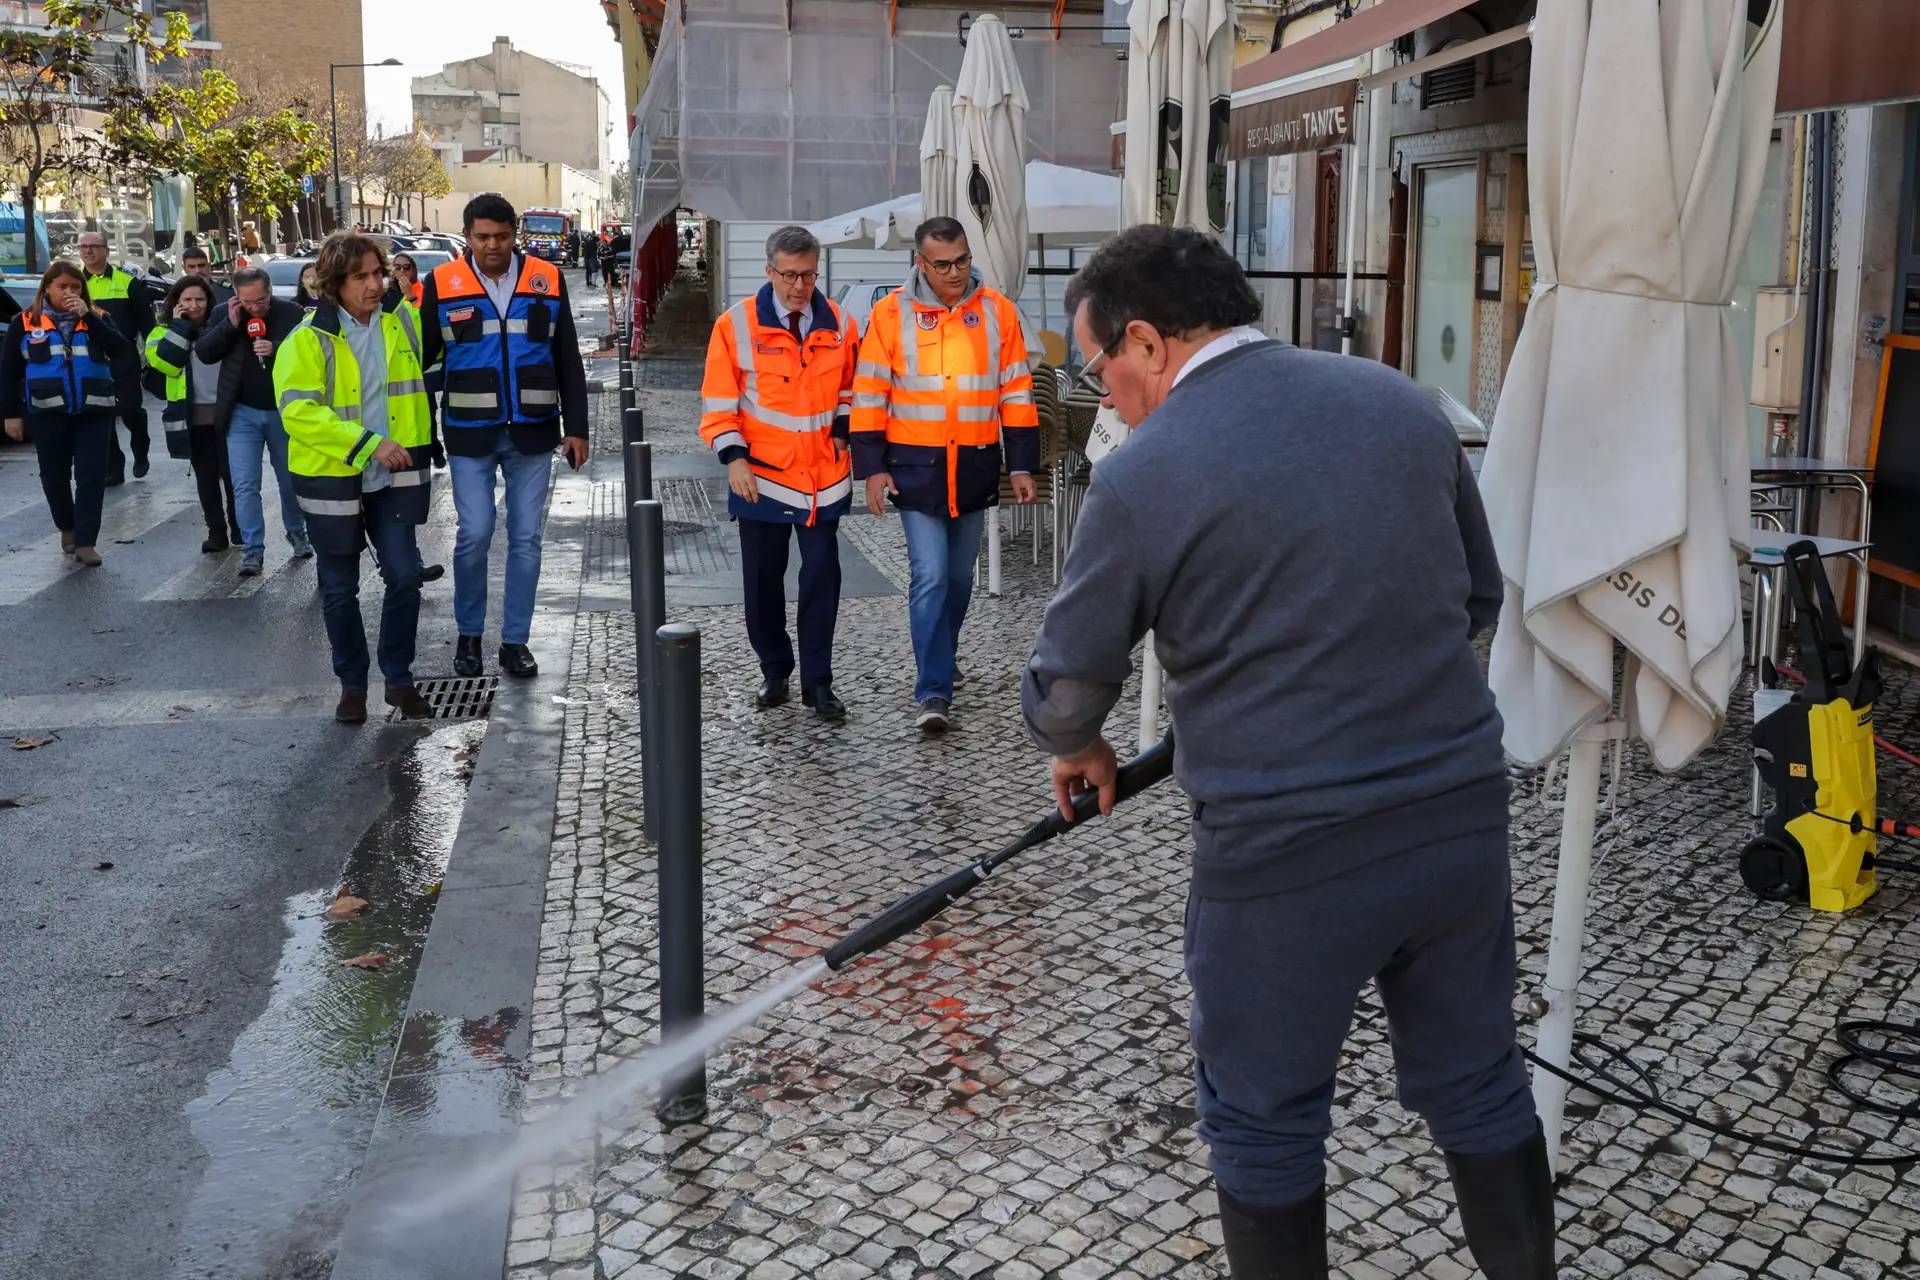 Moedas pede "ajuda mais rápida" ao Governo nos apoios às vítimas do mau tempo em Lisboa